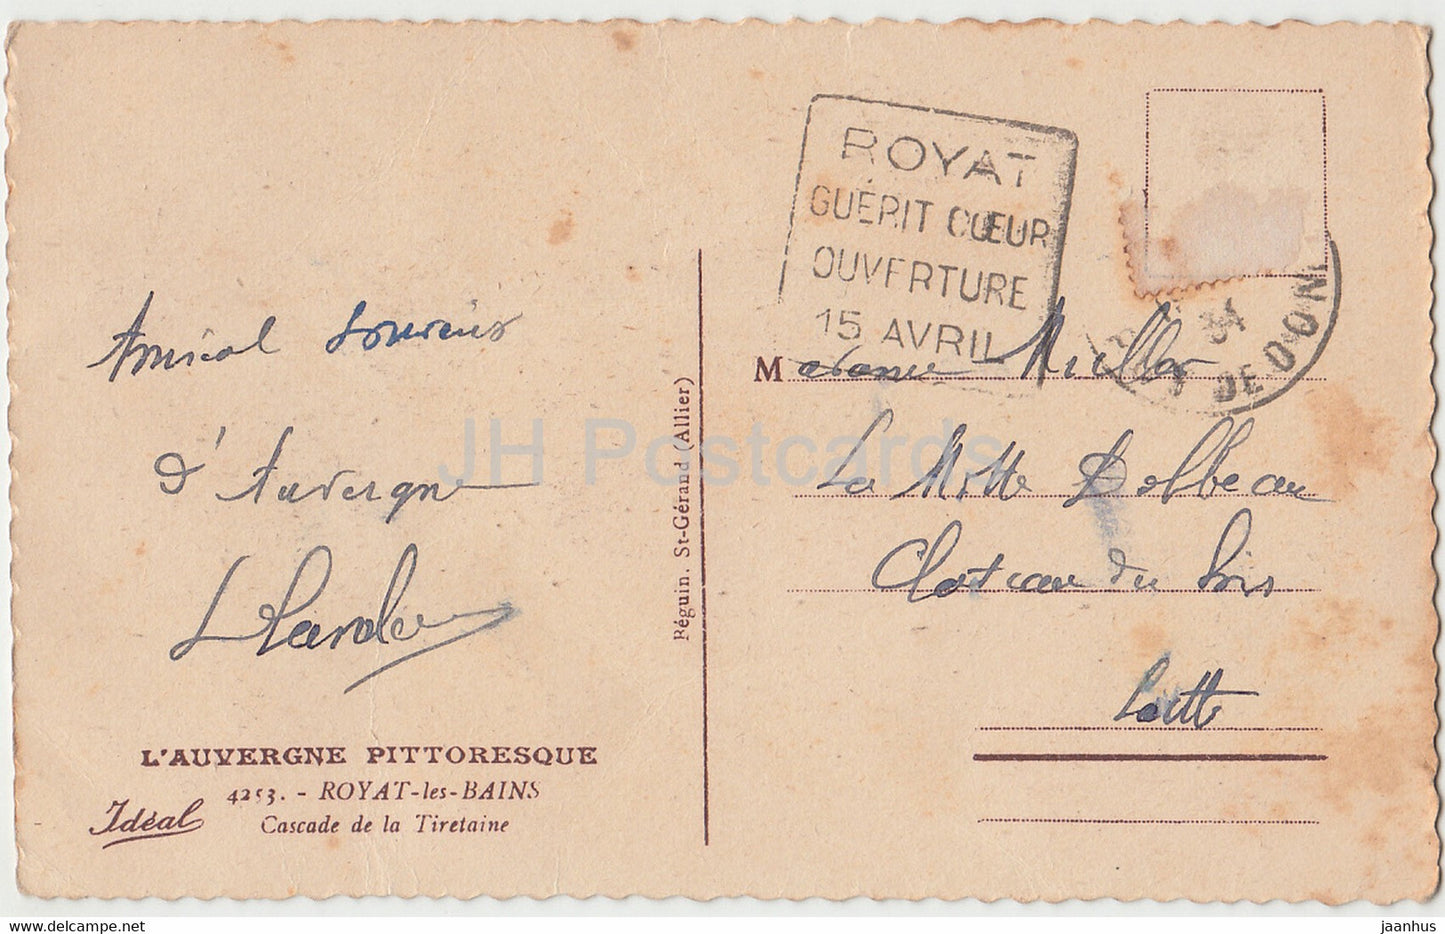 L'Auvergne Pittoresque - Royat les Bains - Cascade de la Tiretaine - 4253 - old postcard - 1934 - France - used